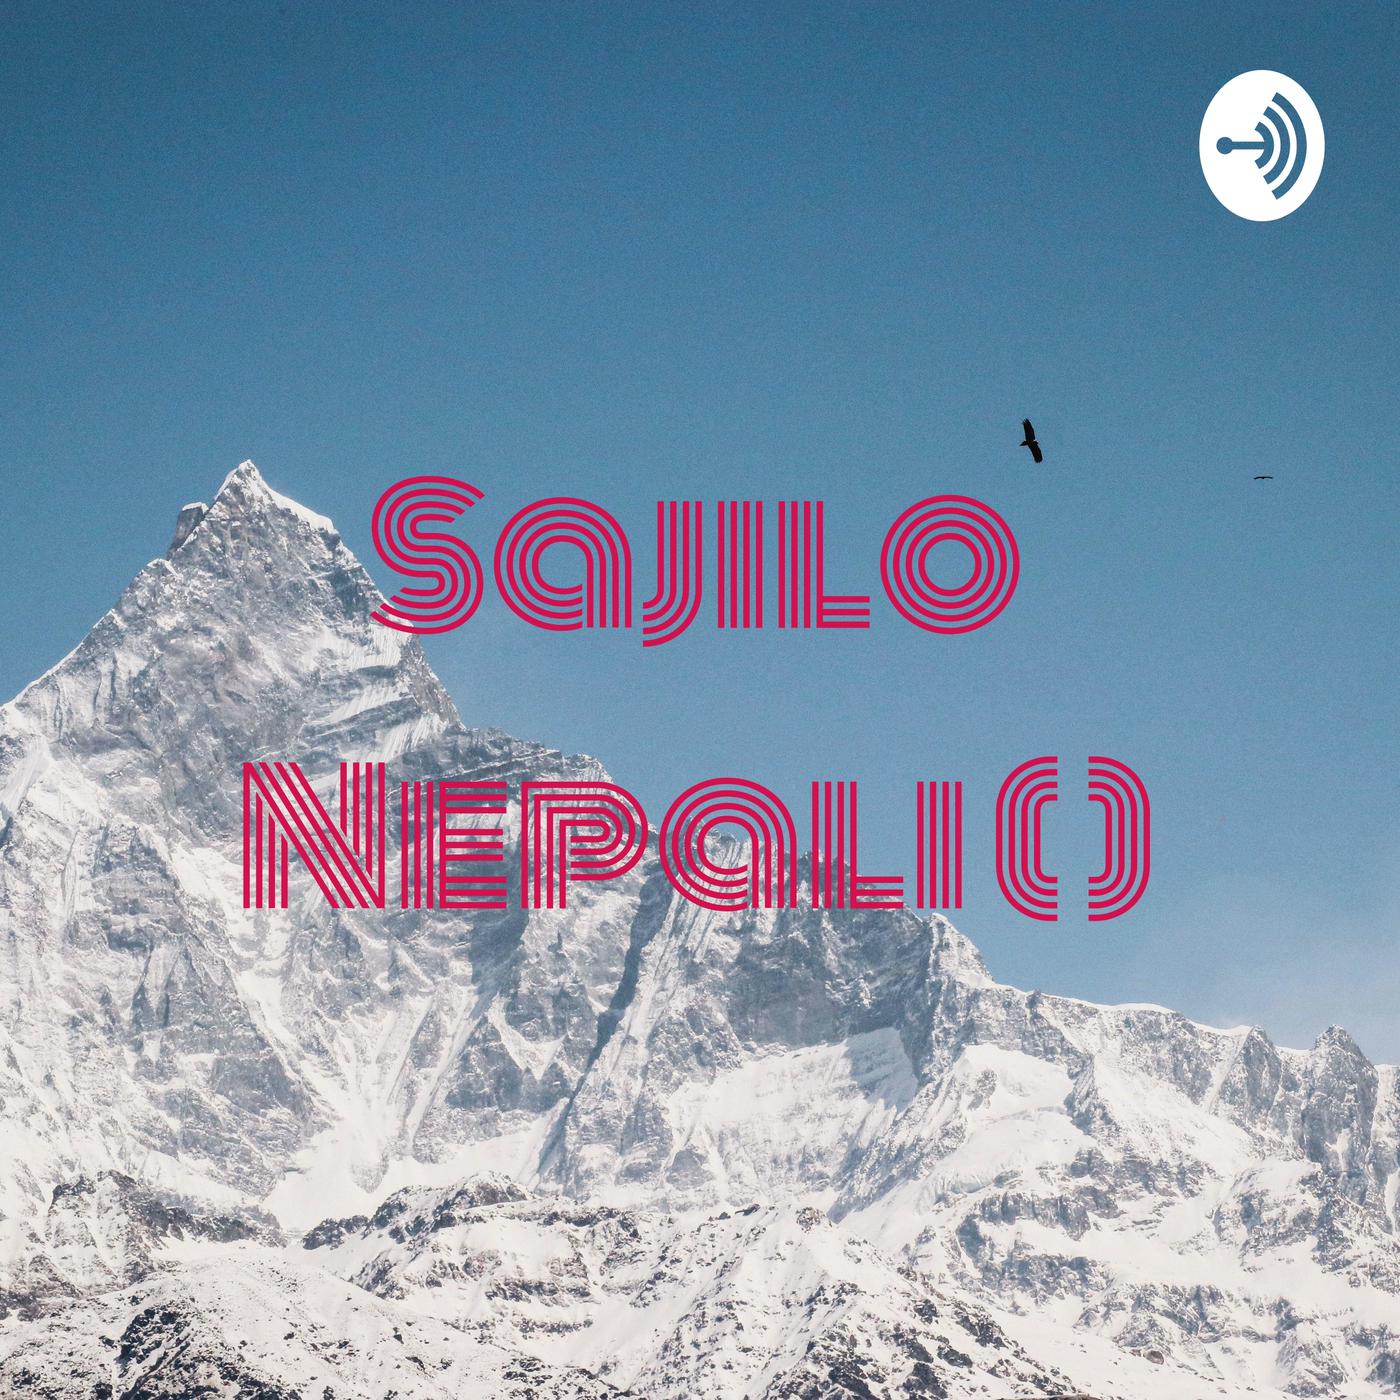 सजिलो नेपाली (Easy Nepali)